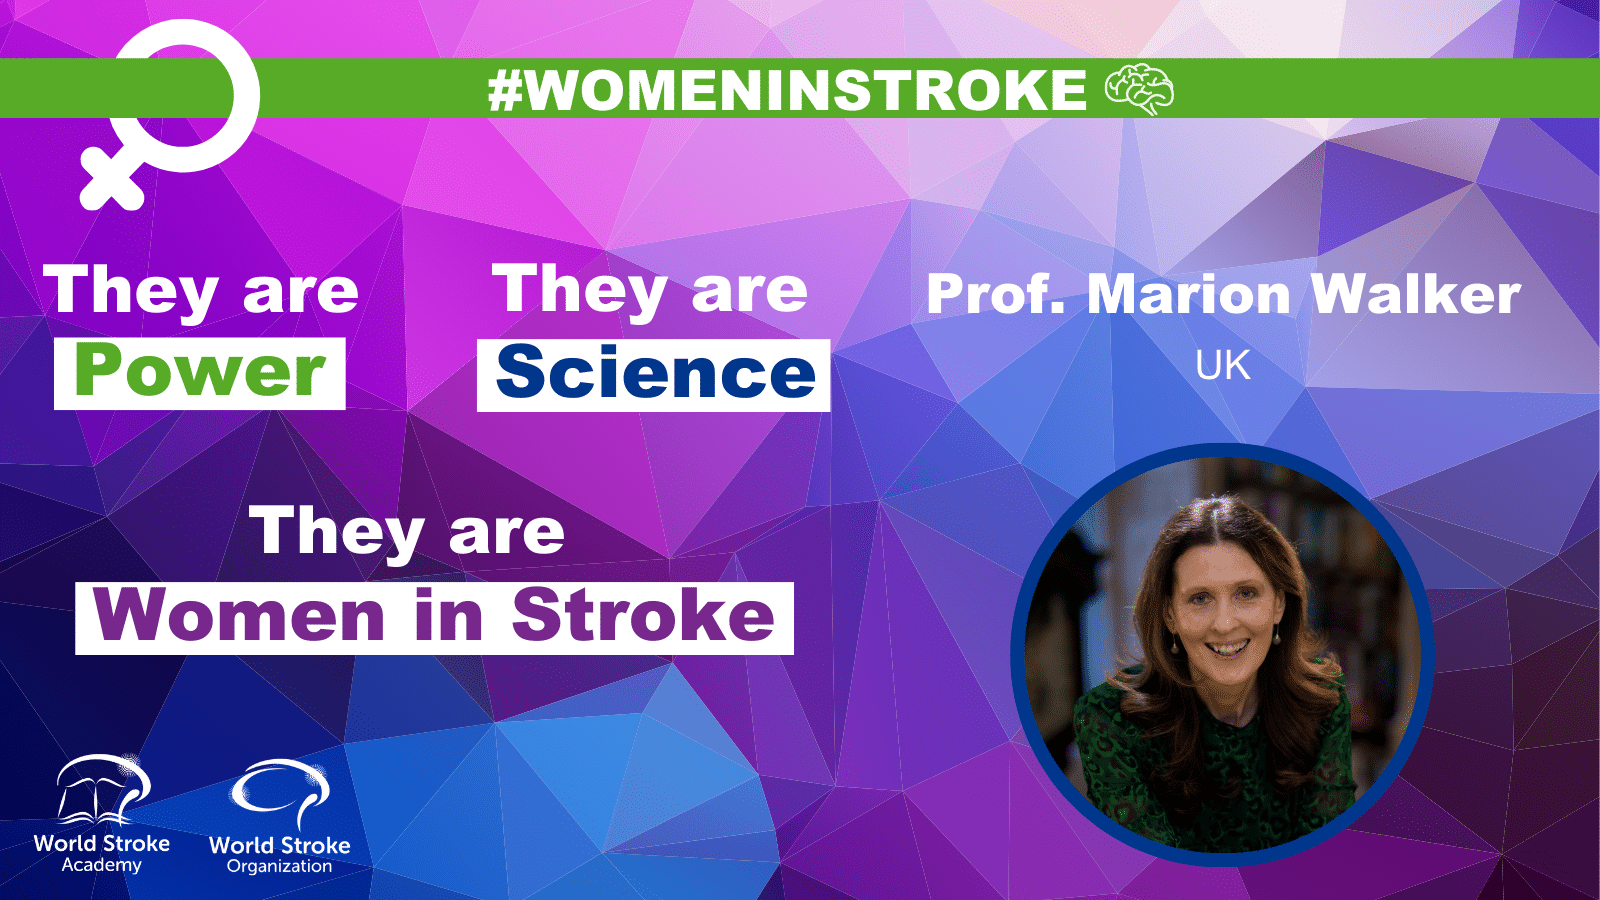 Women in Stroke – Marion Walker